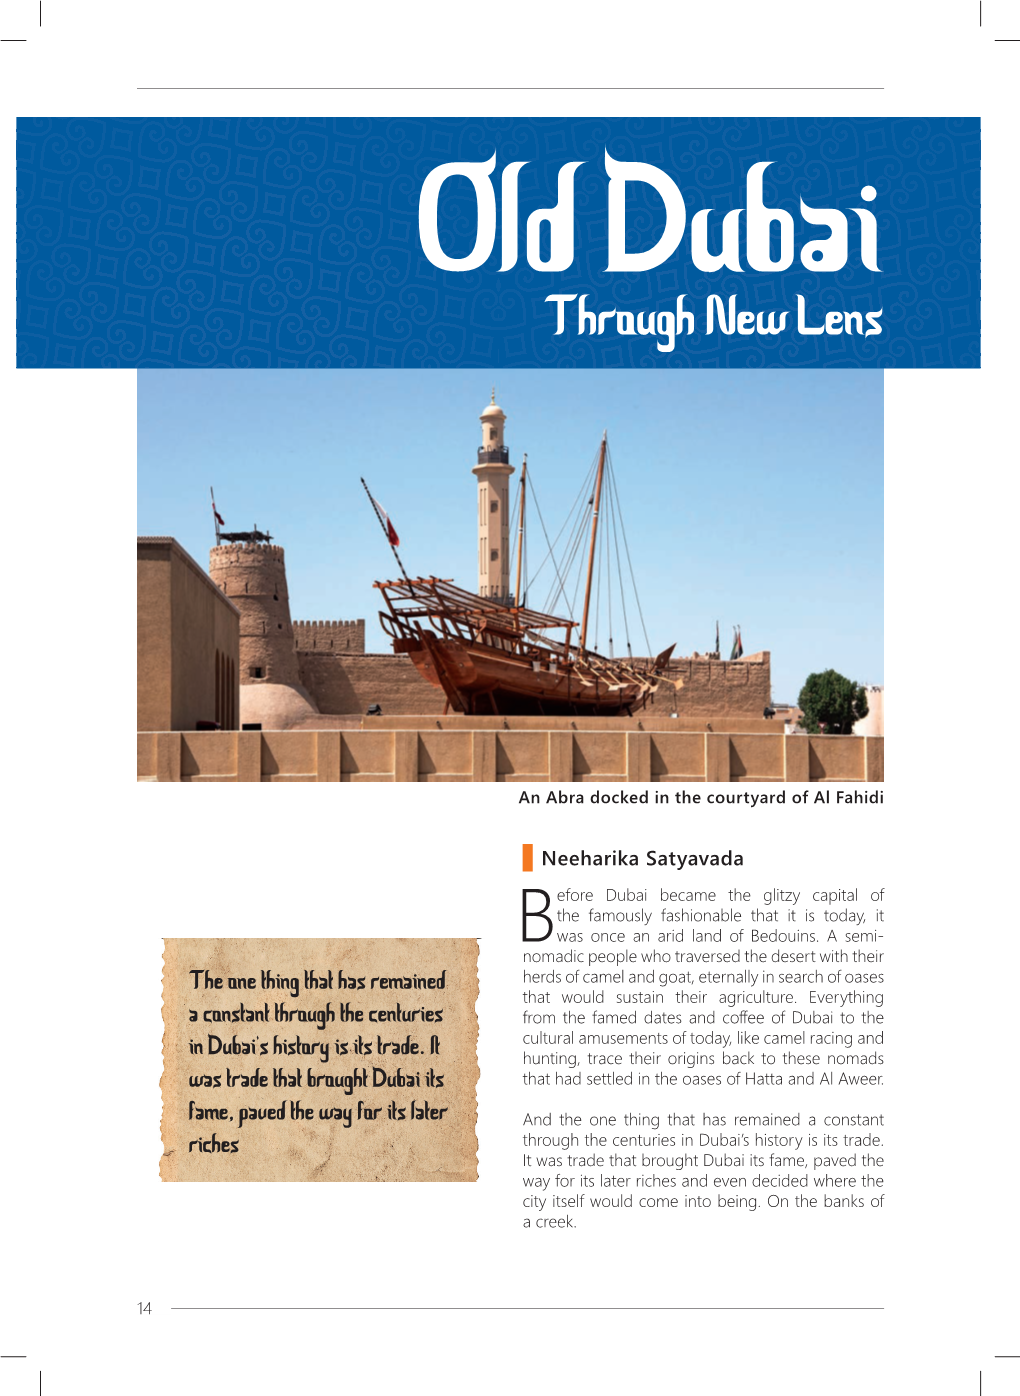 Old Dubai Through a New Lens